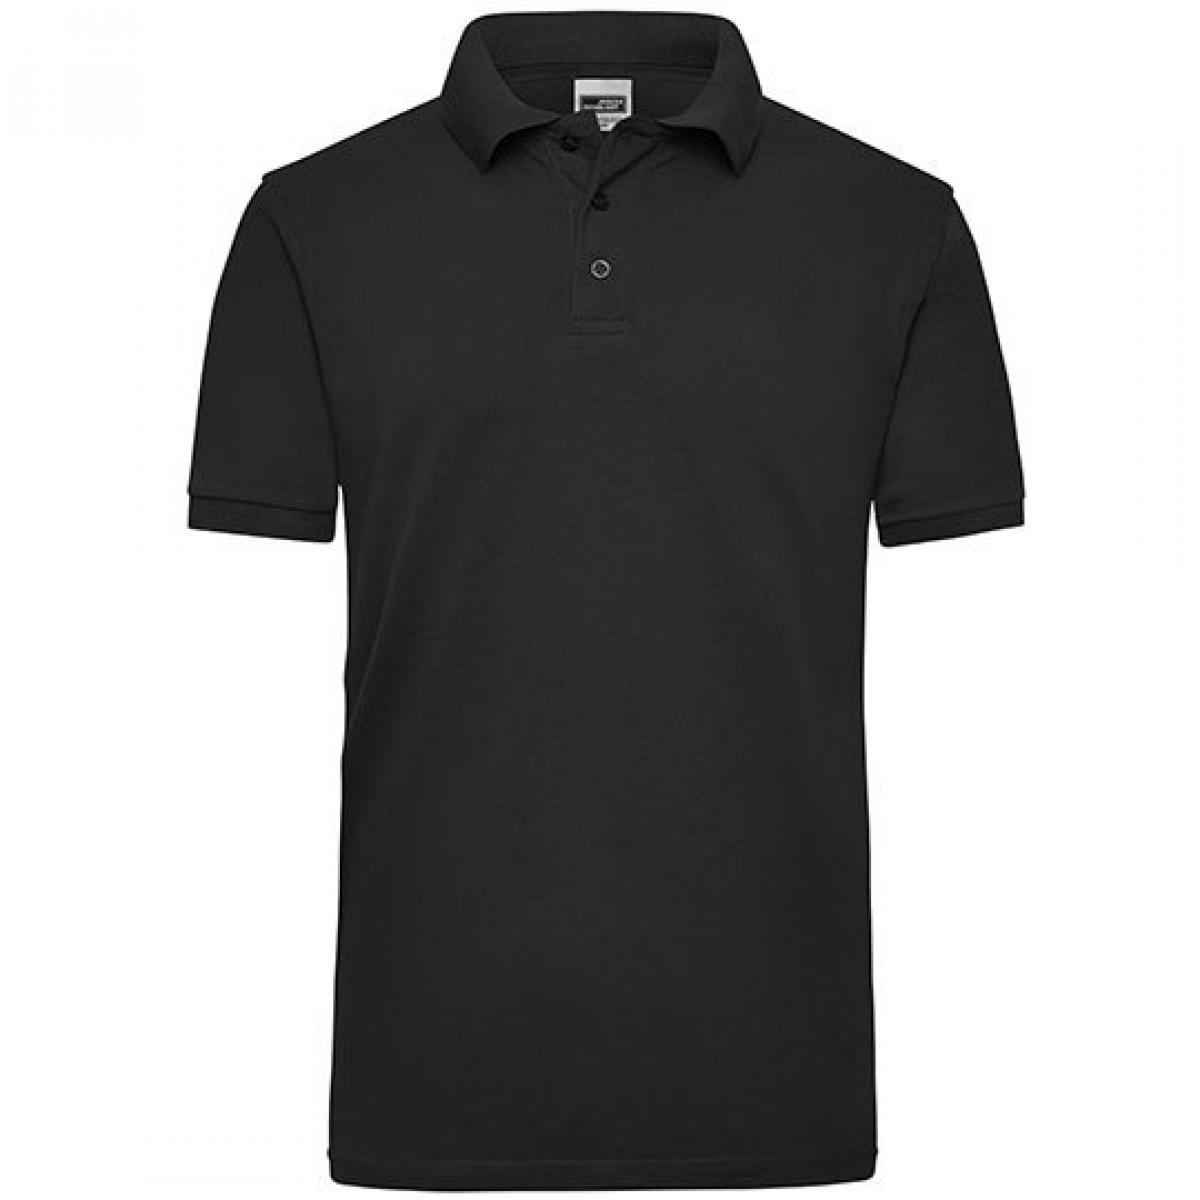 Hersteller: James+Nicholson Herstellernummer: JN 801 Artikelbezeichnung: Workwear Herren Poloshirt Men Farbe: Black